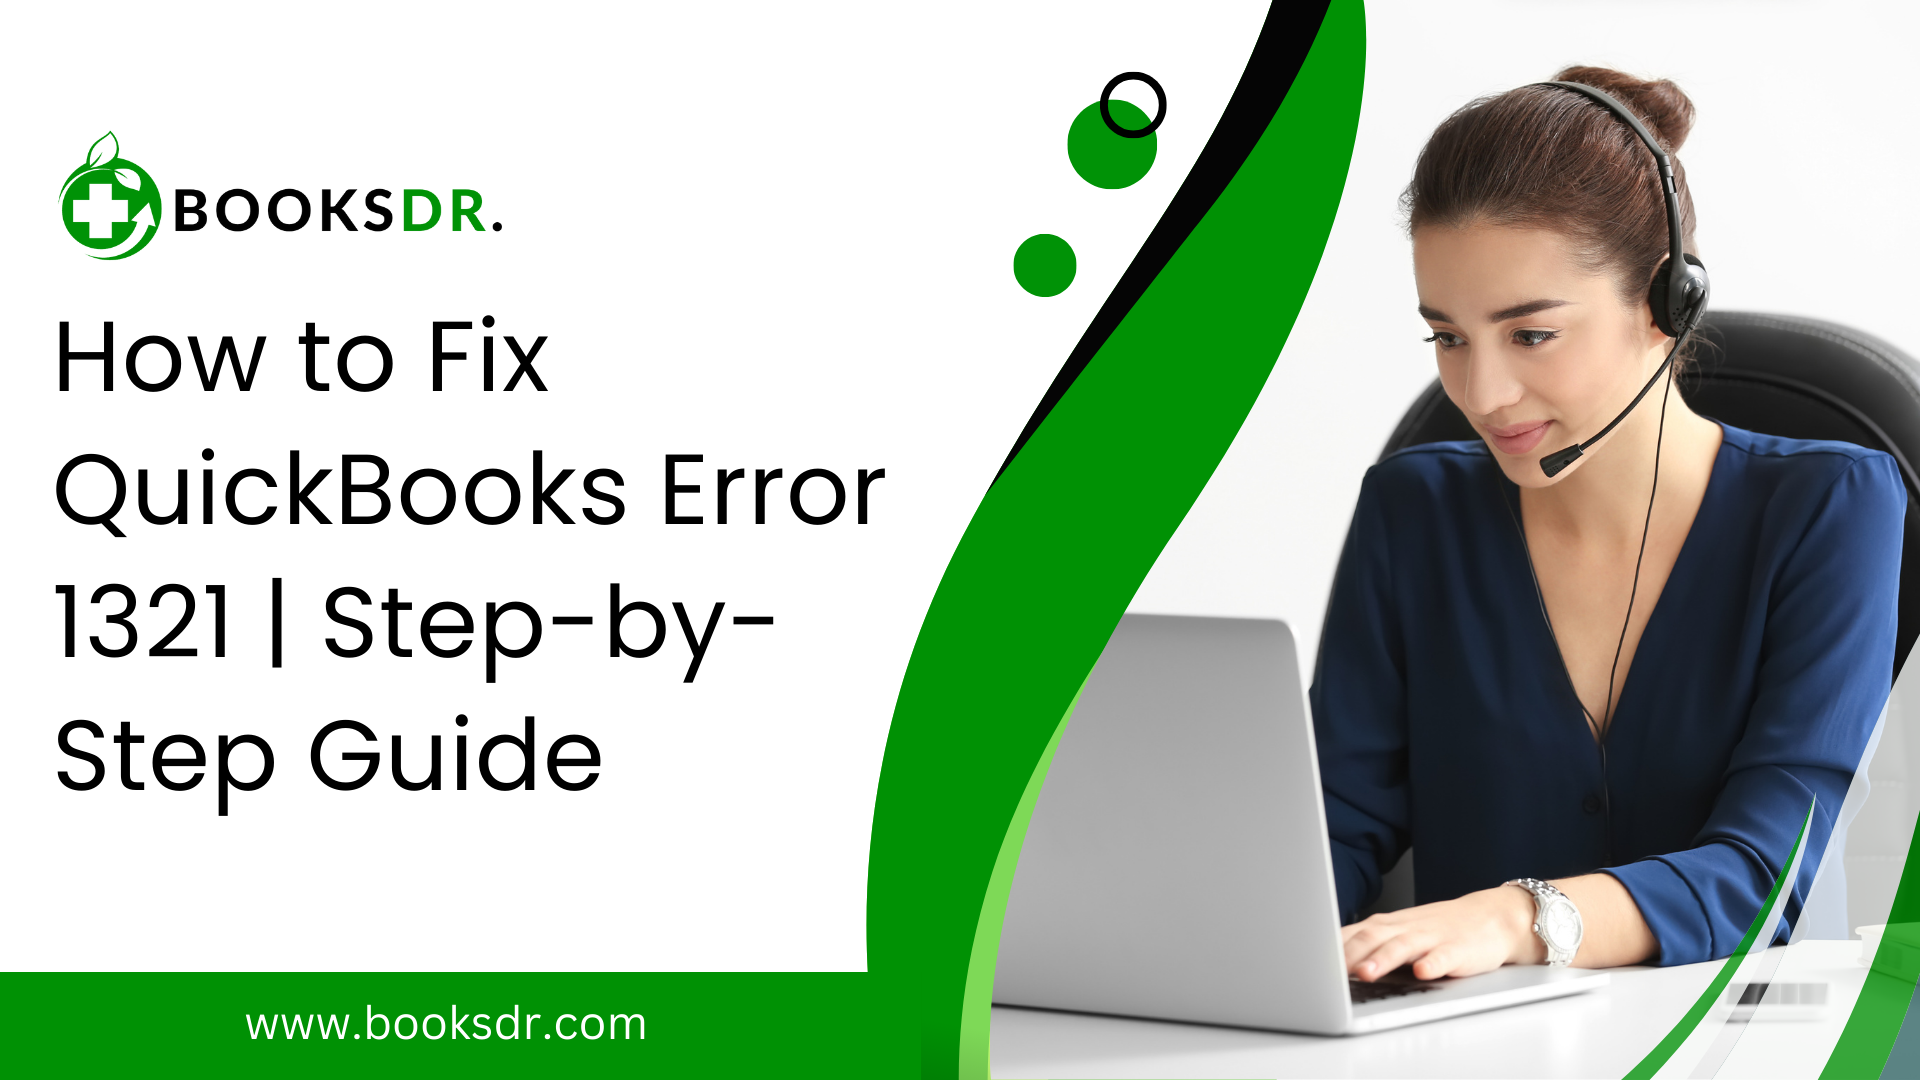 QuickBooks Error 1321